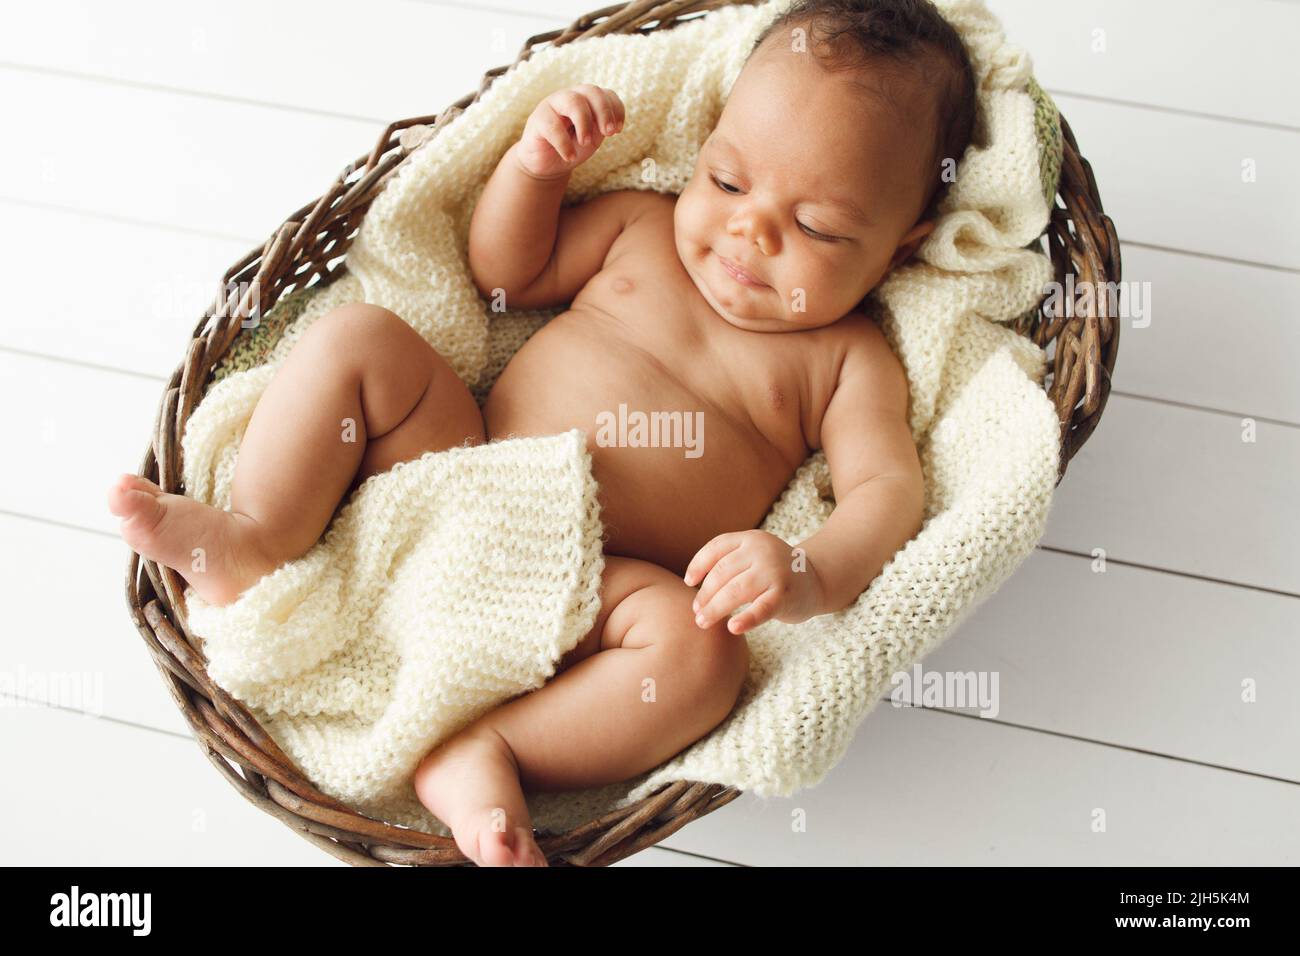 Nouveau-né africain bébé dans un panier en osier, plat Banque D'Images